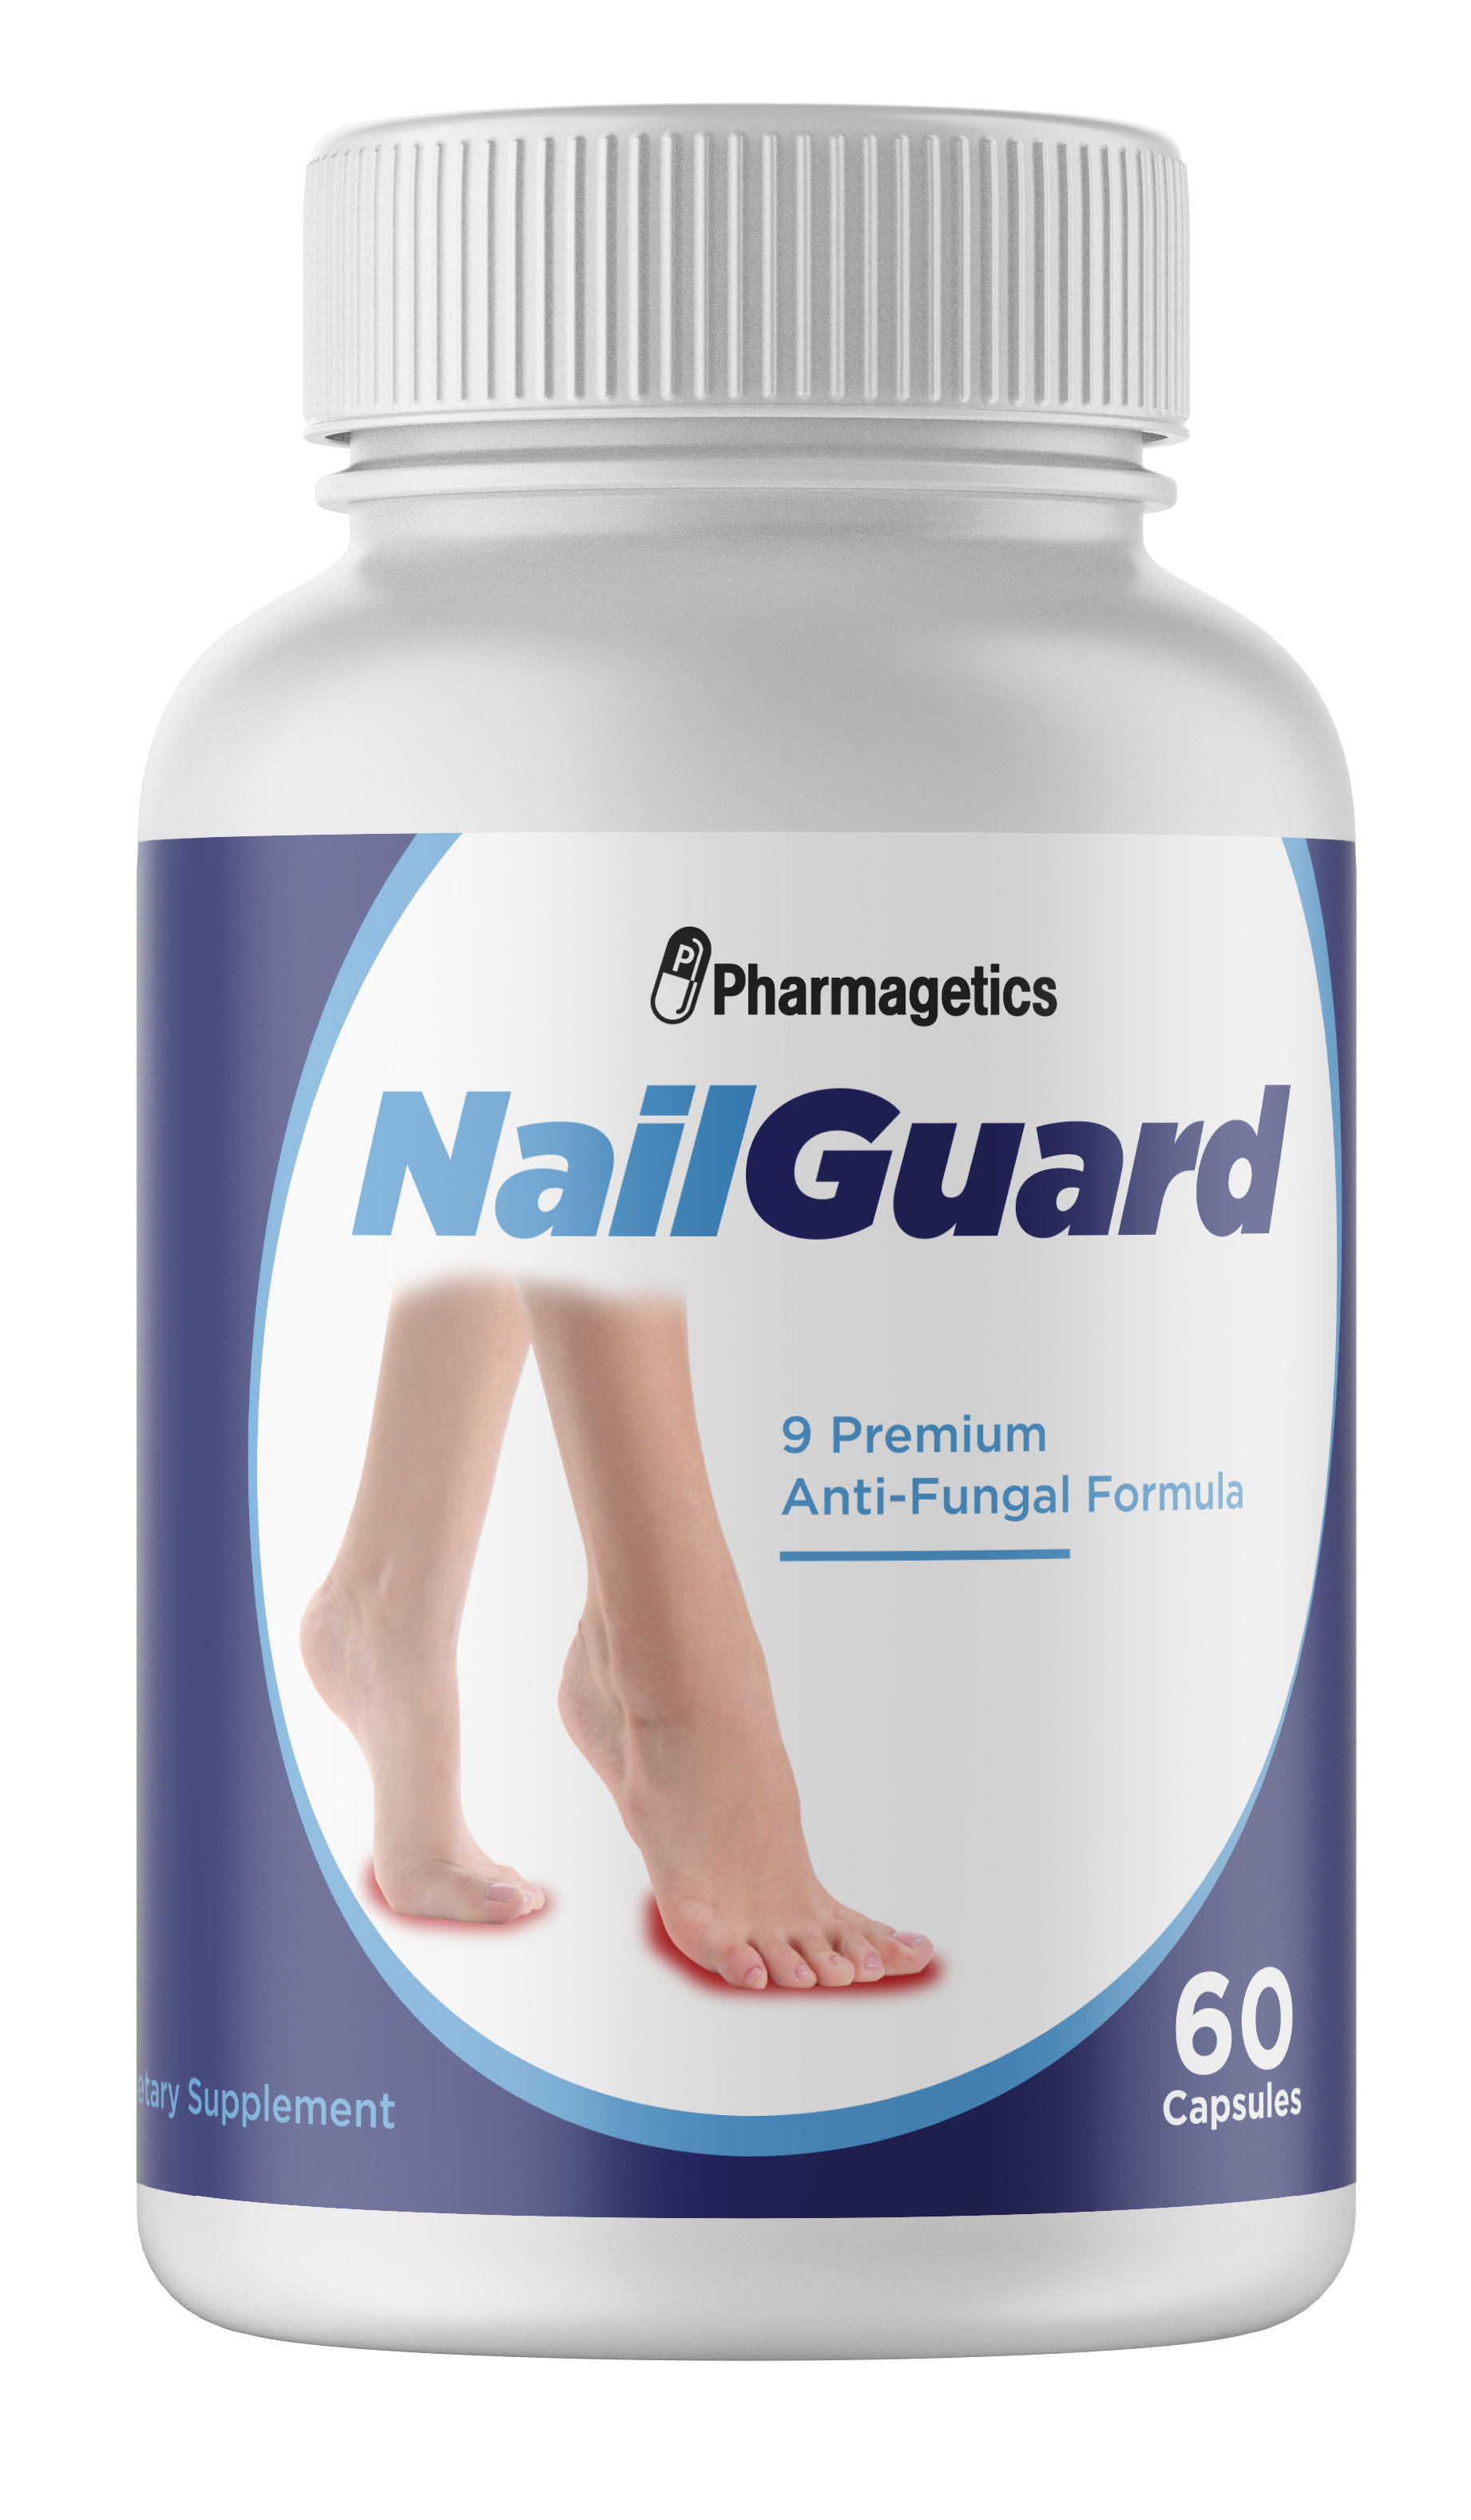 Nail Guard 9 Premium Anti-Fungal Formula - 60 Capsules